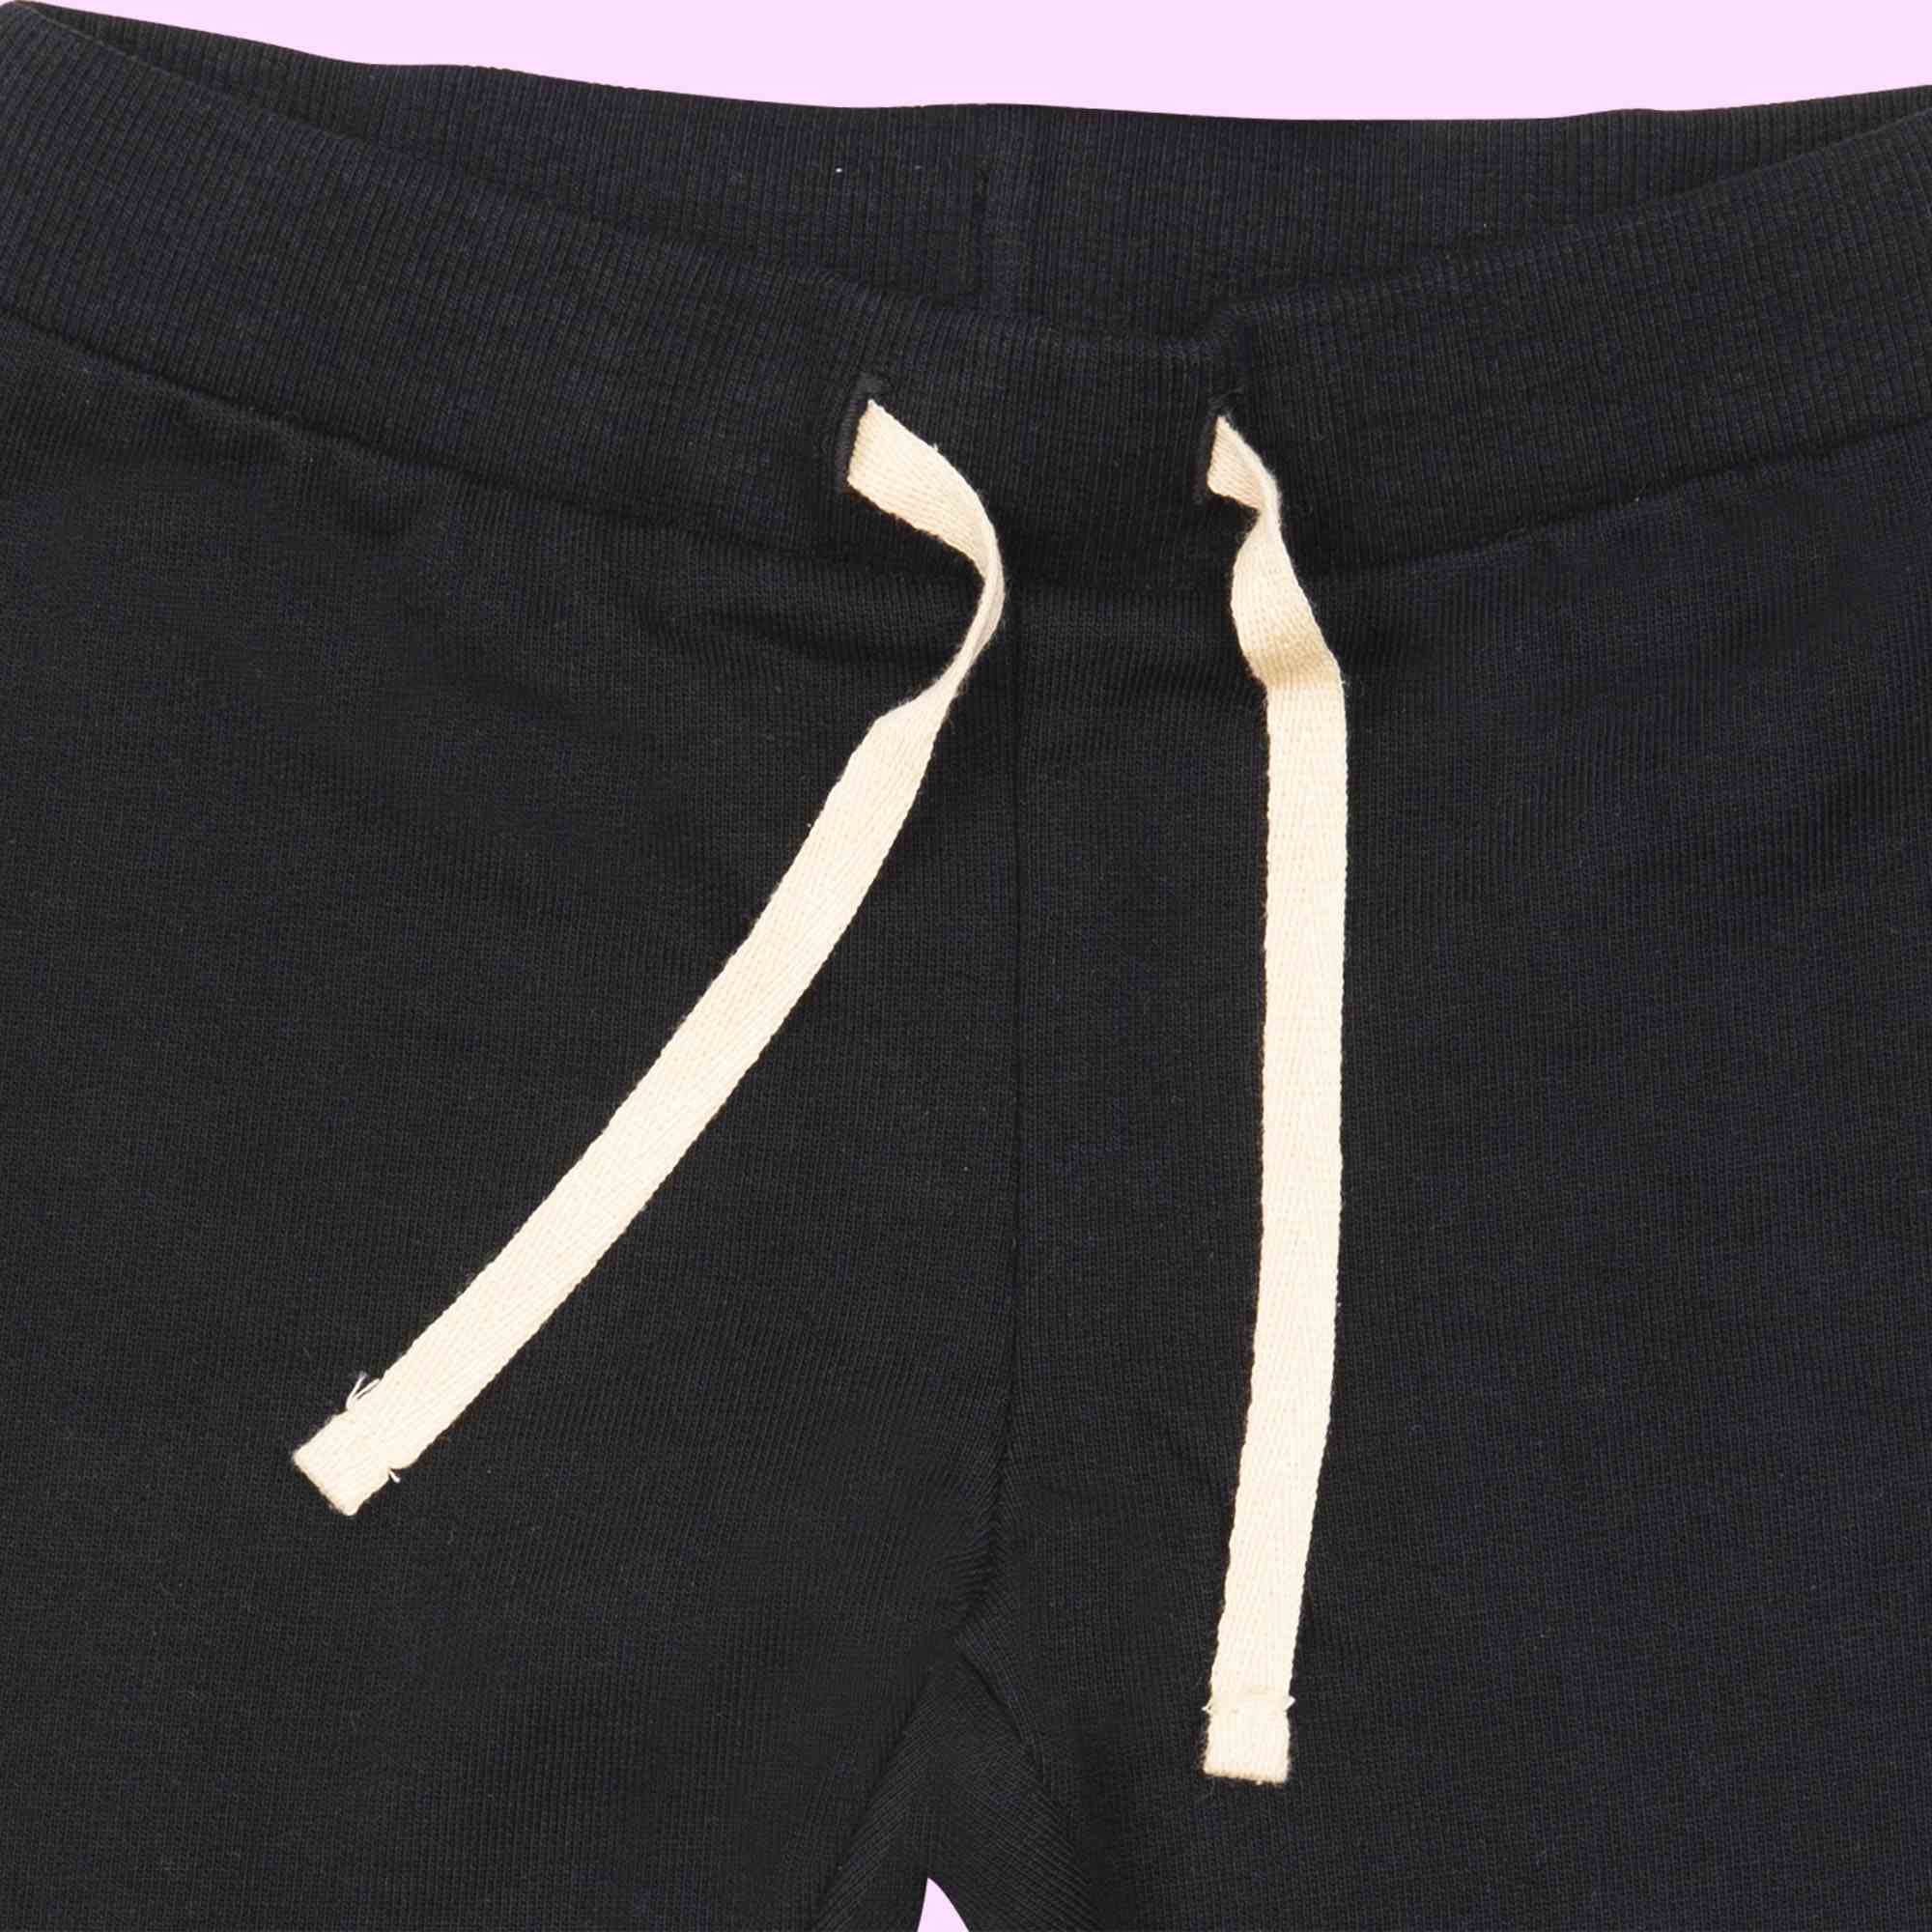 Mawi pantalone nero stampa orsetti - Mawi